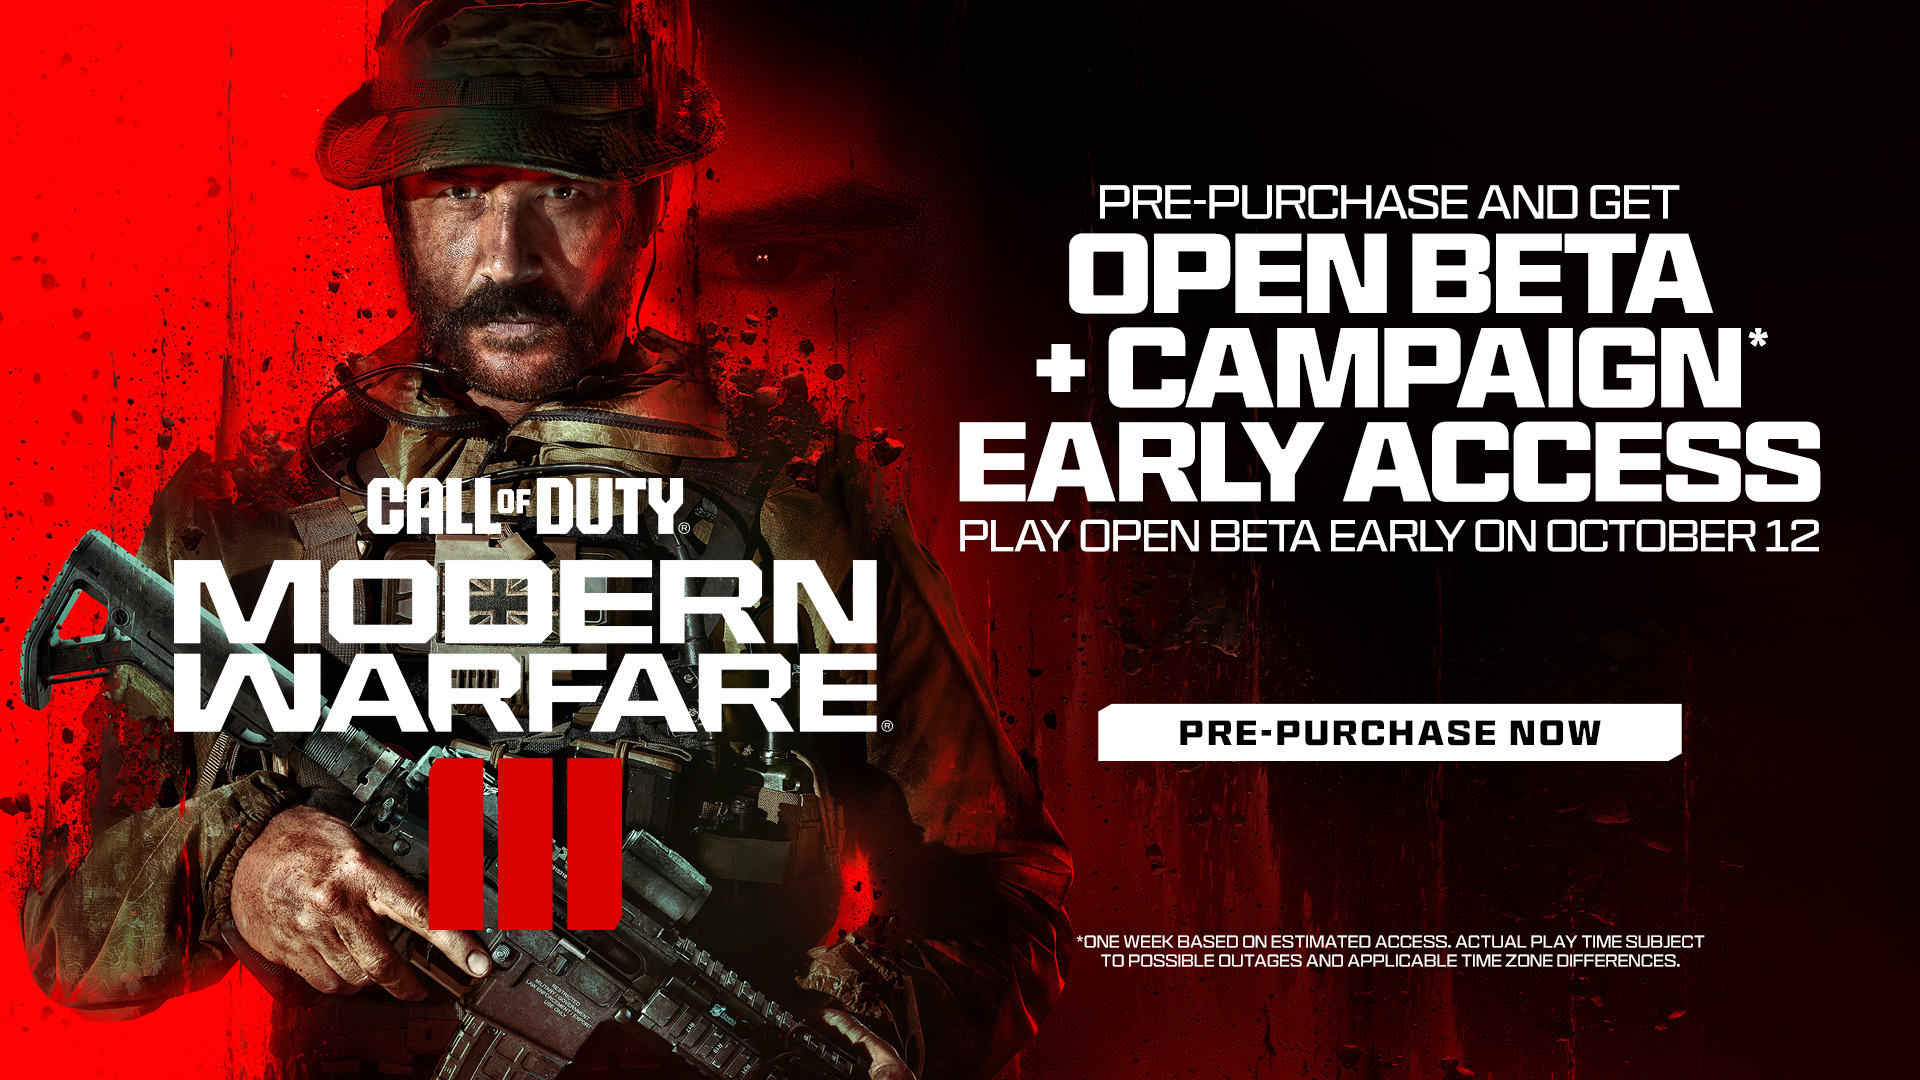 Assista ao Call of Duty: NEXT e ganhe recompensas no Modern Warfare III -  Adrenaline